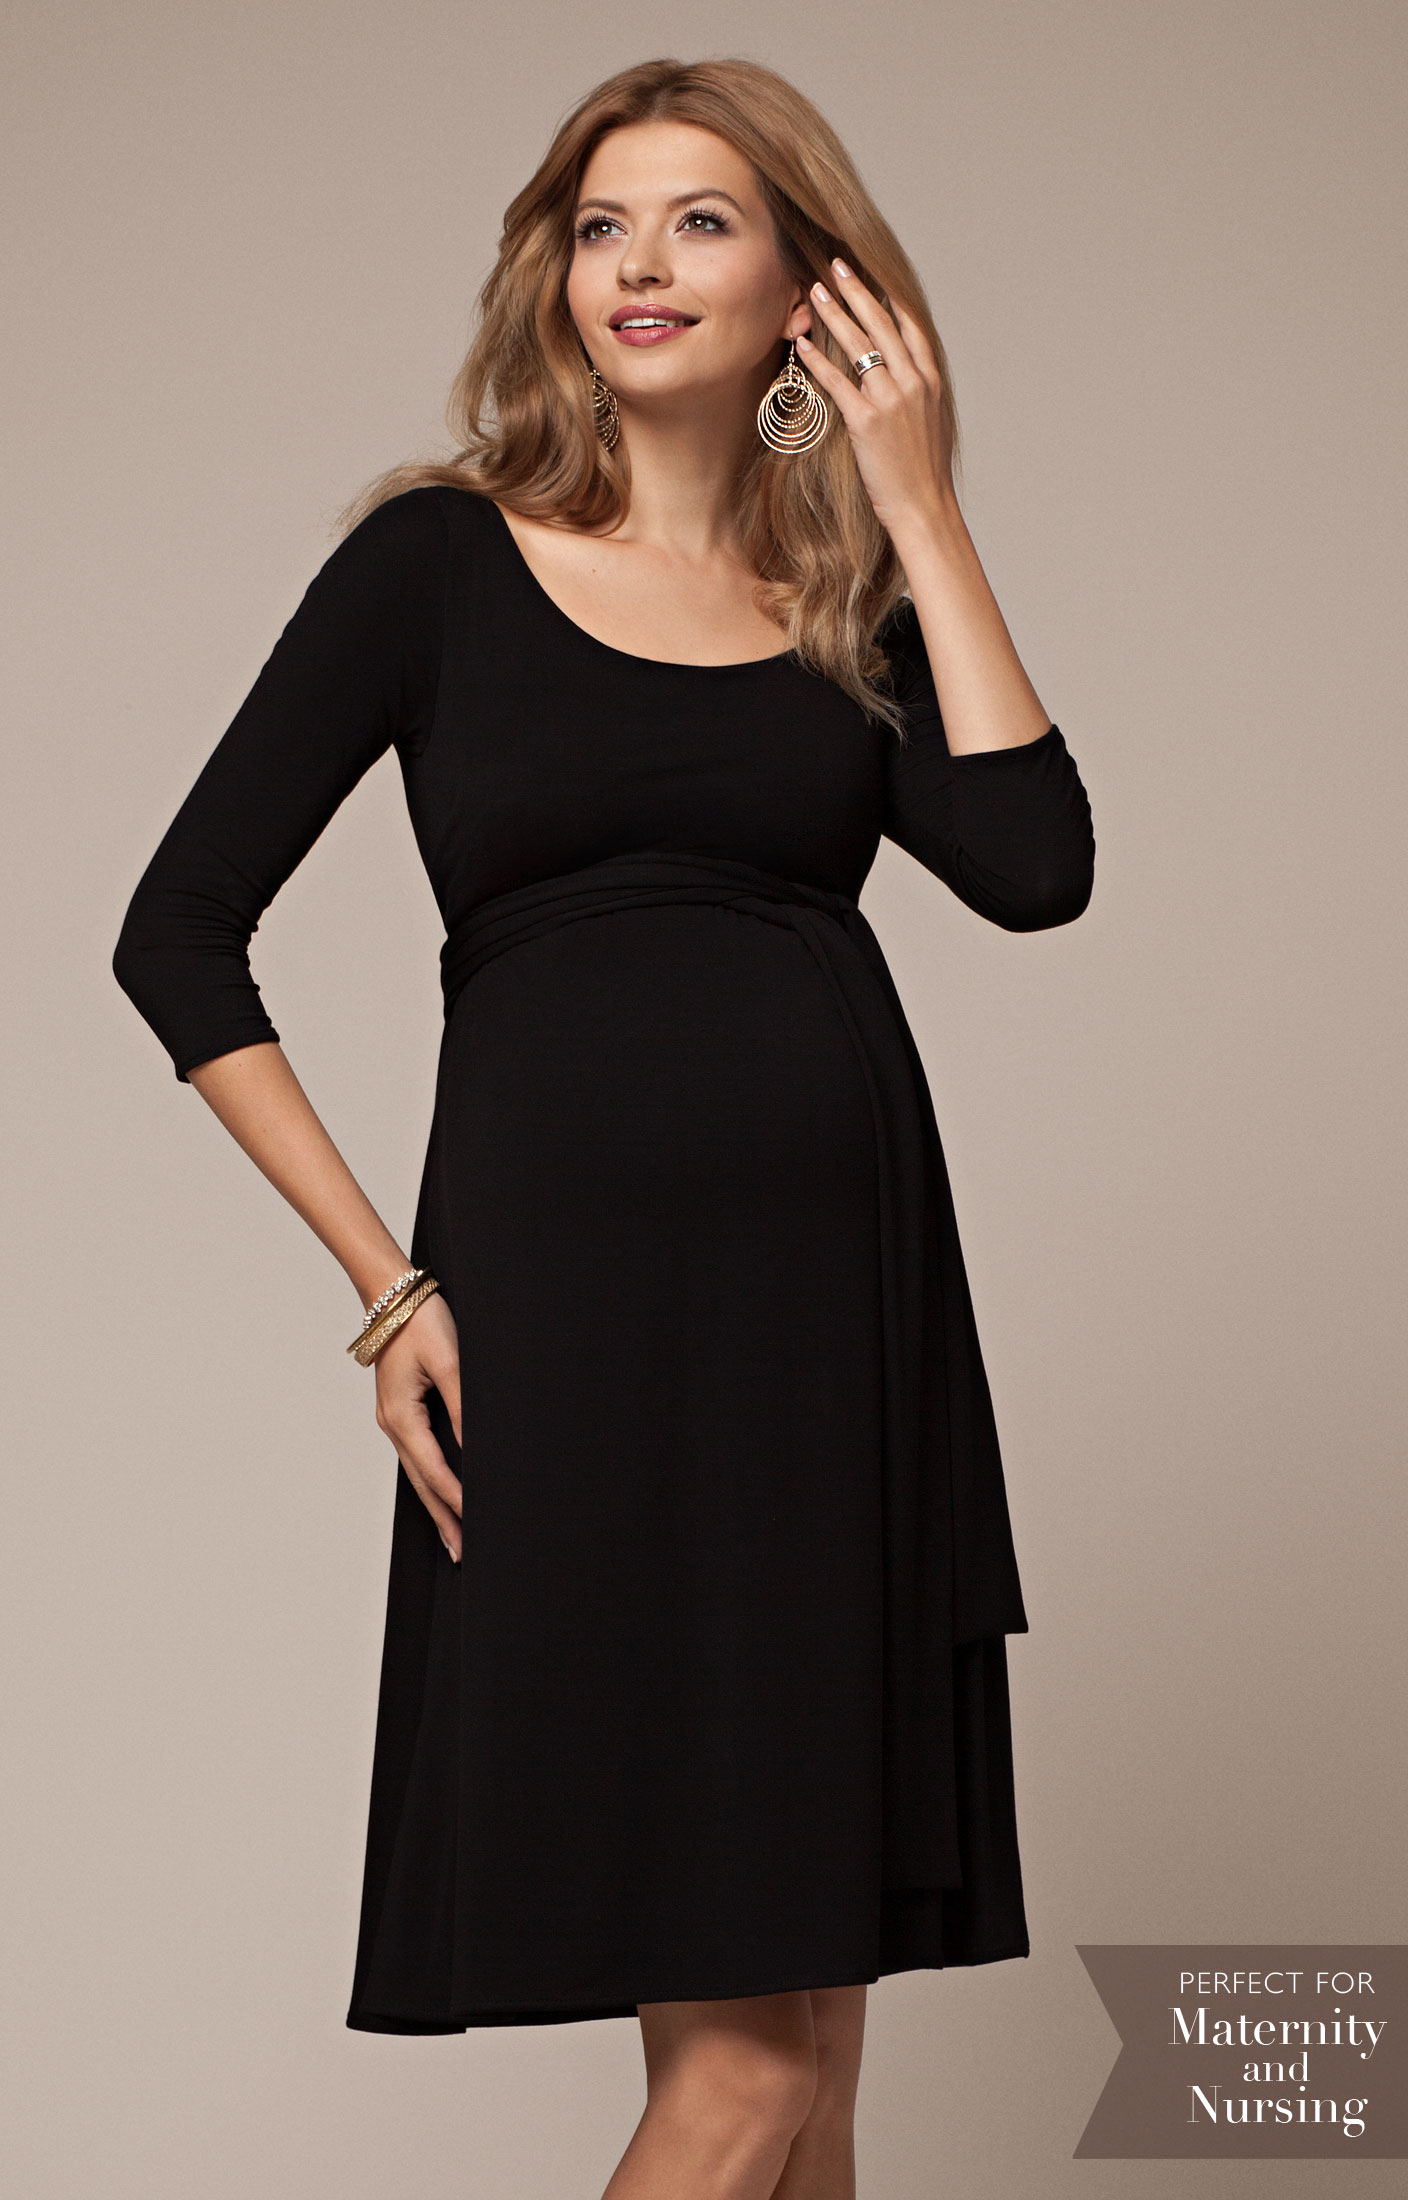 black-maternity-dress2 - MEMORANDUM